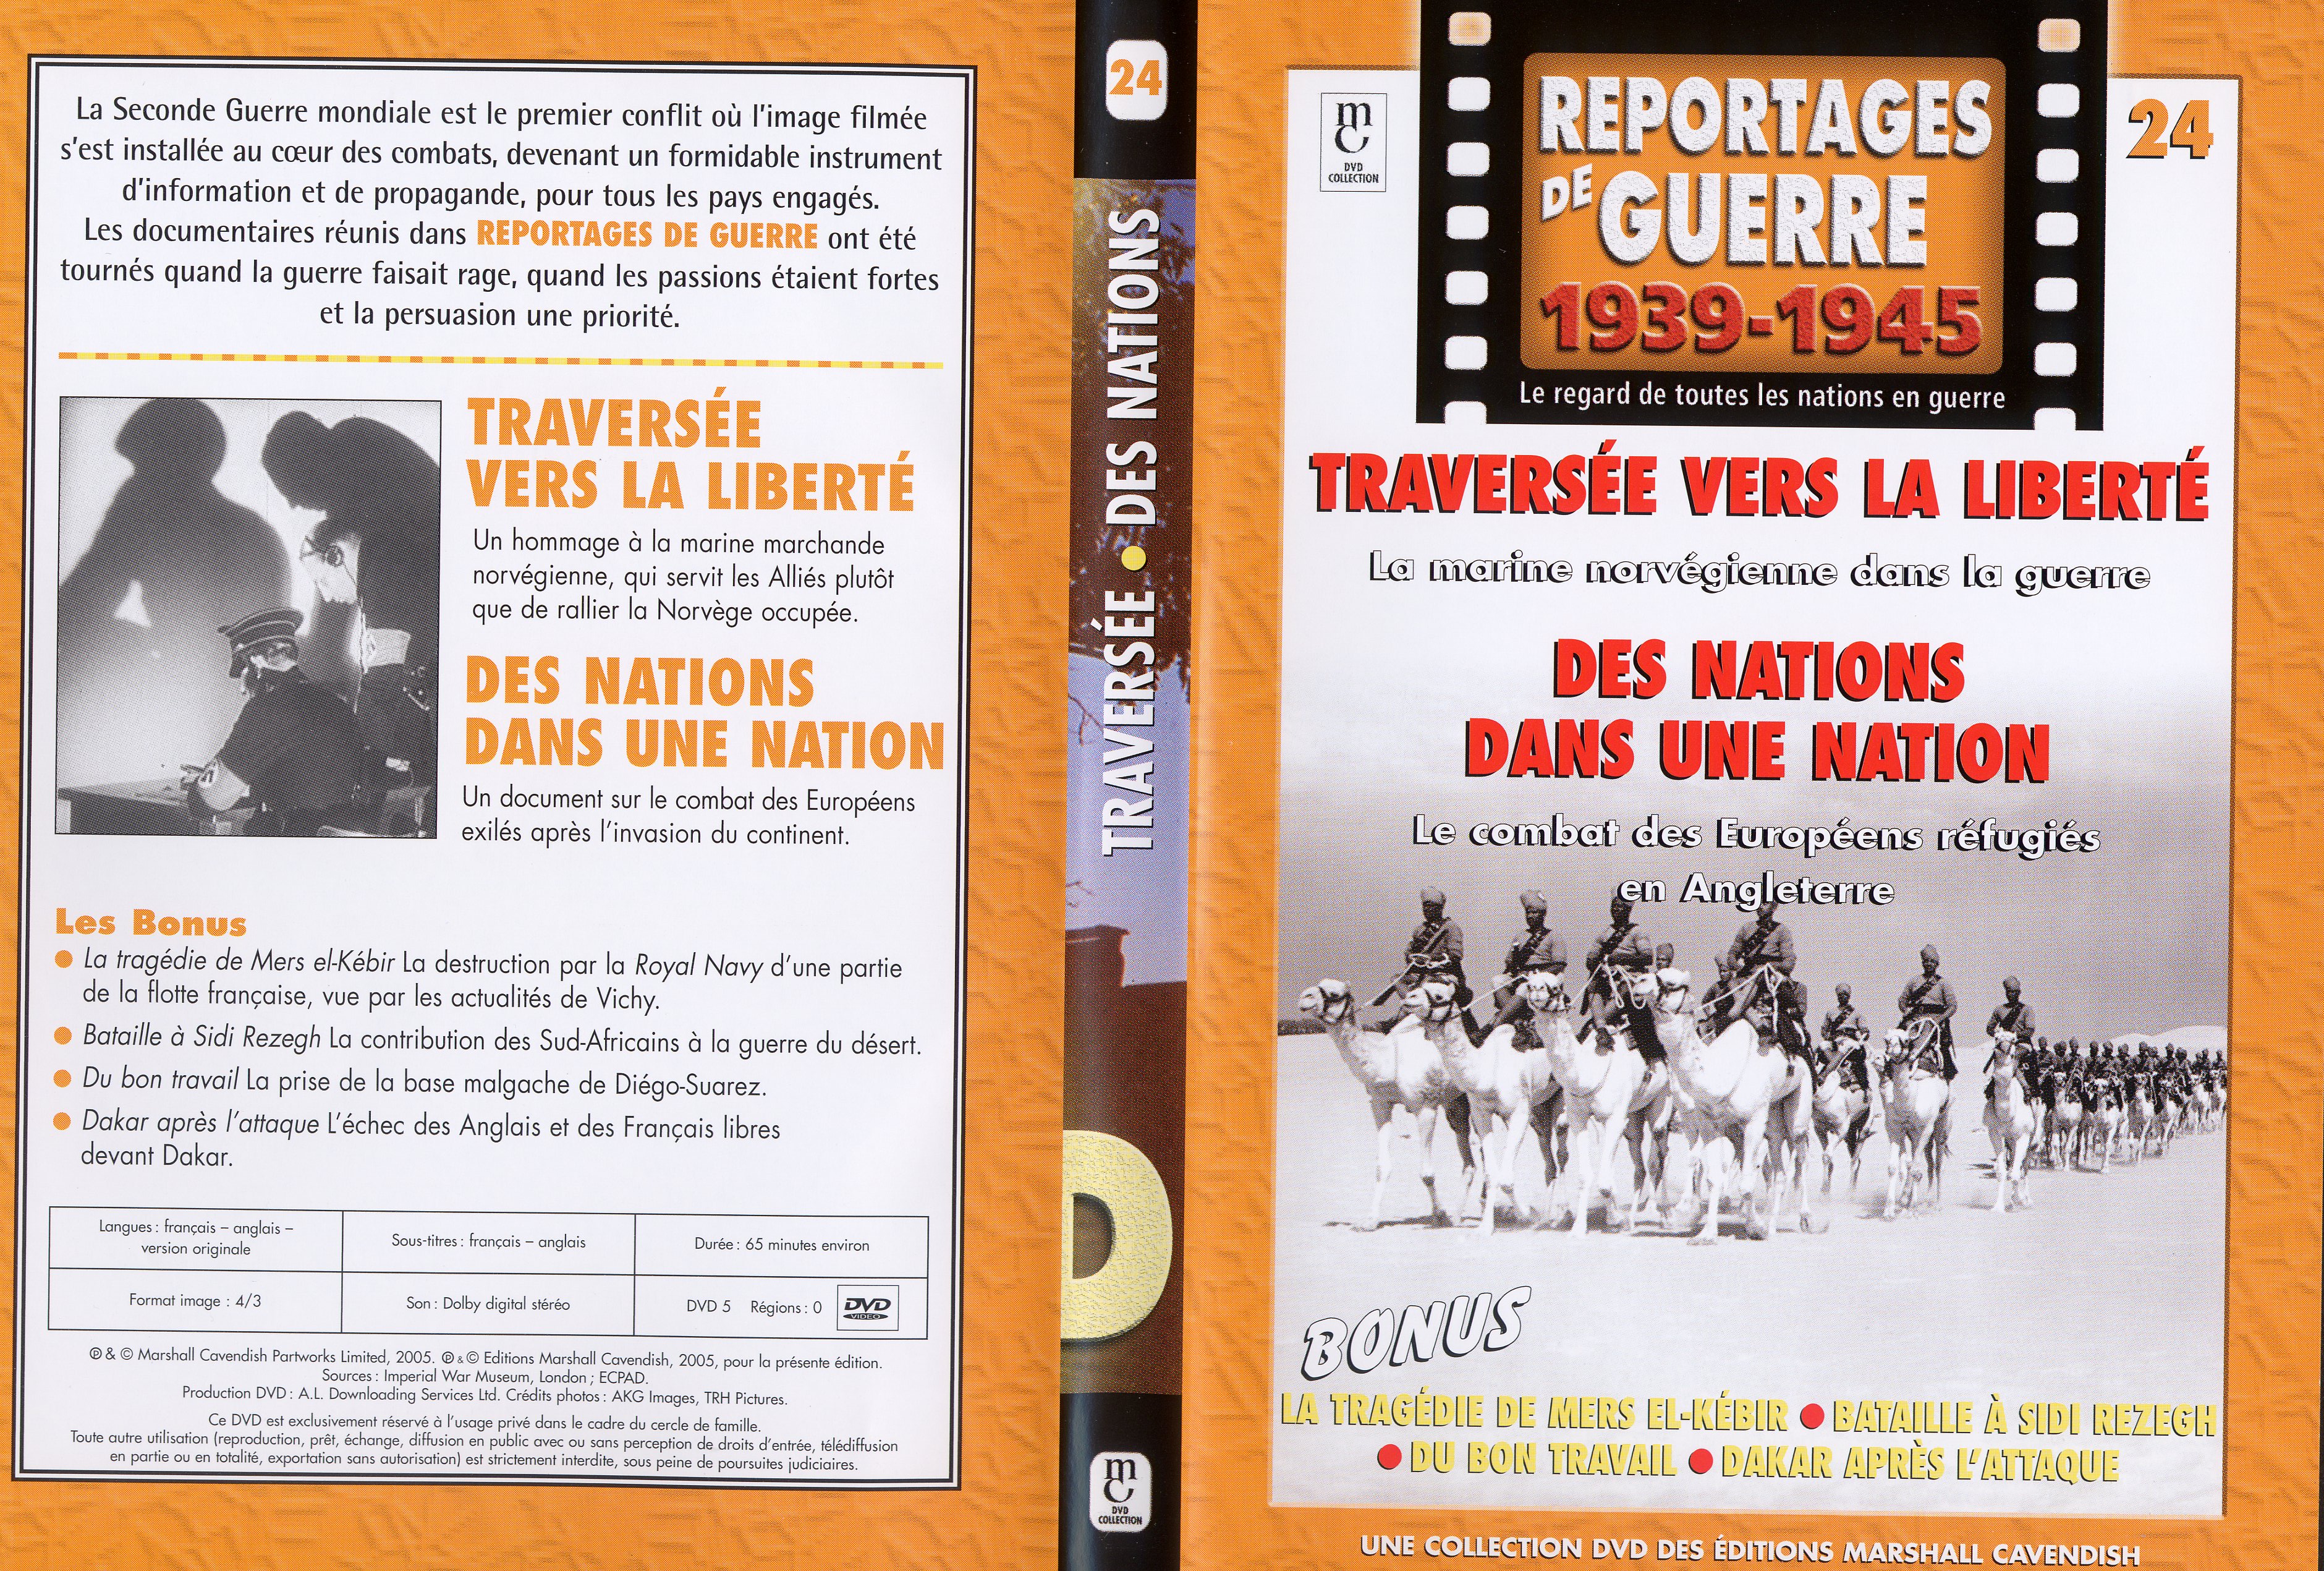 Jaquette DVD Reportages de guerre vol 24